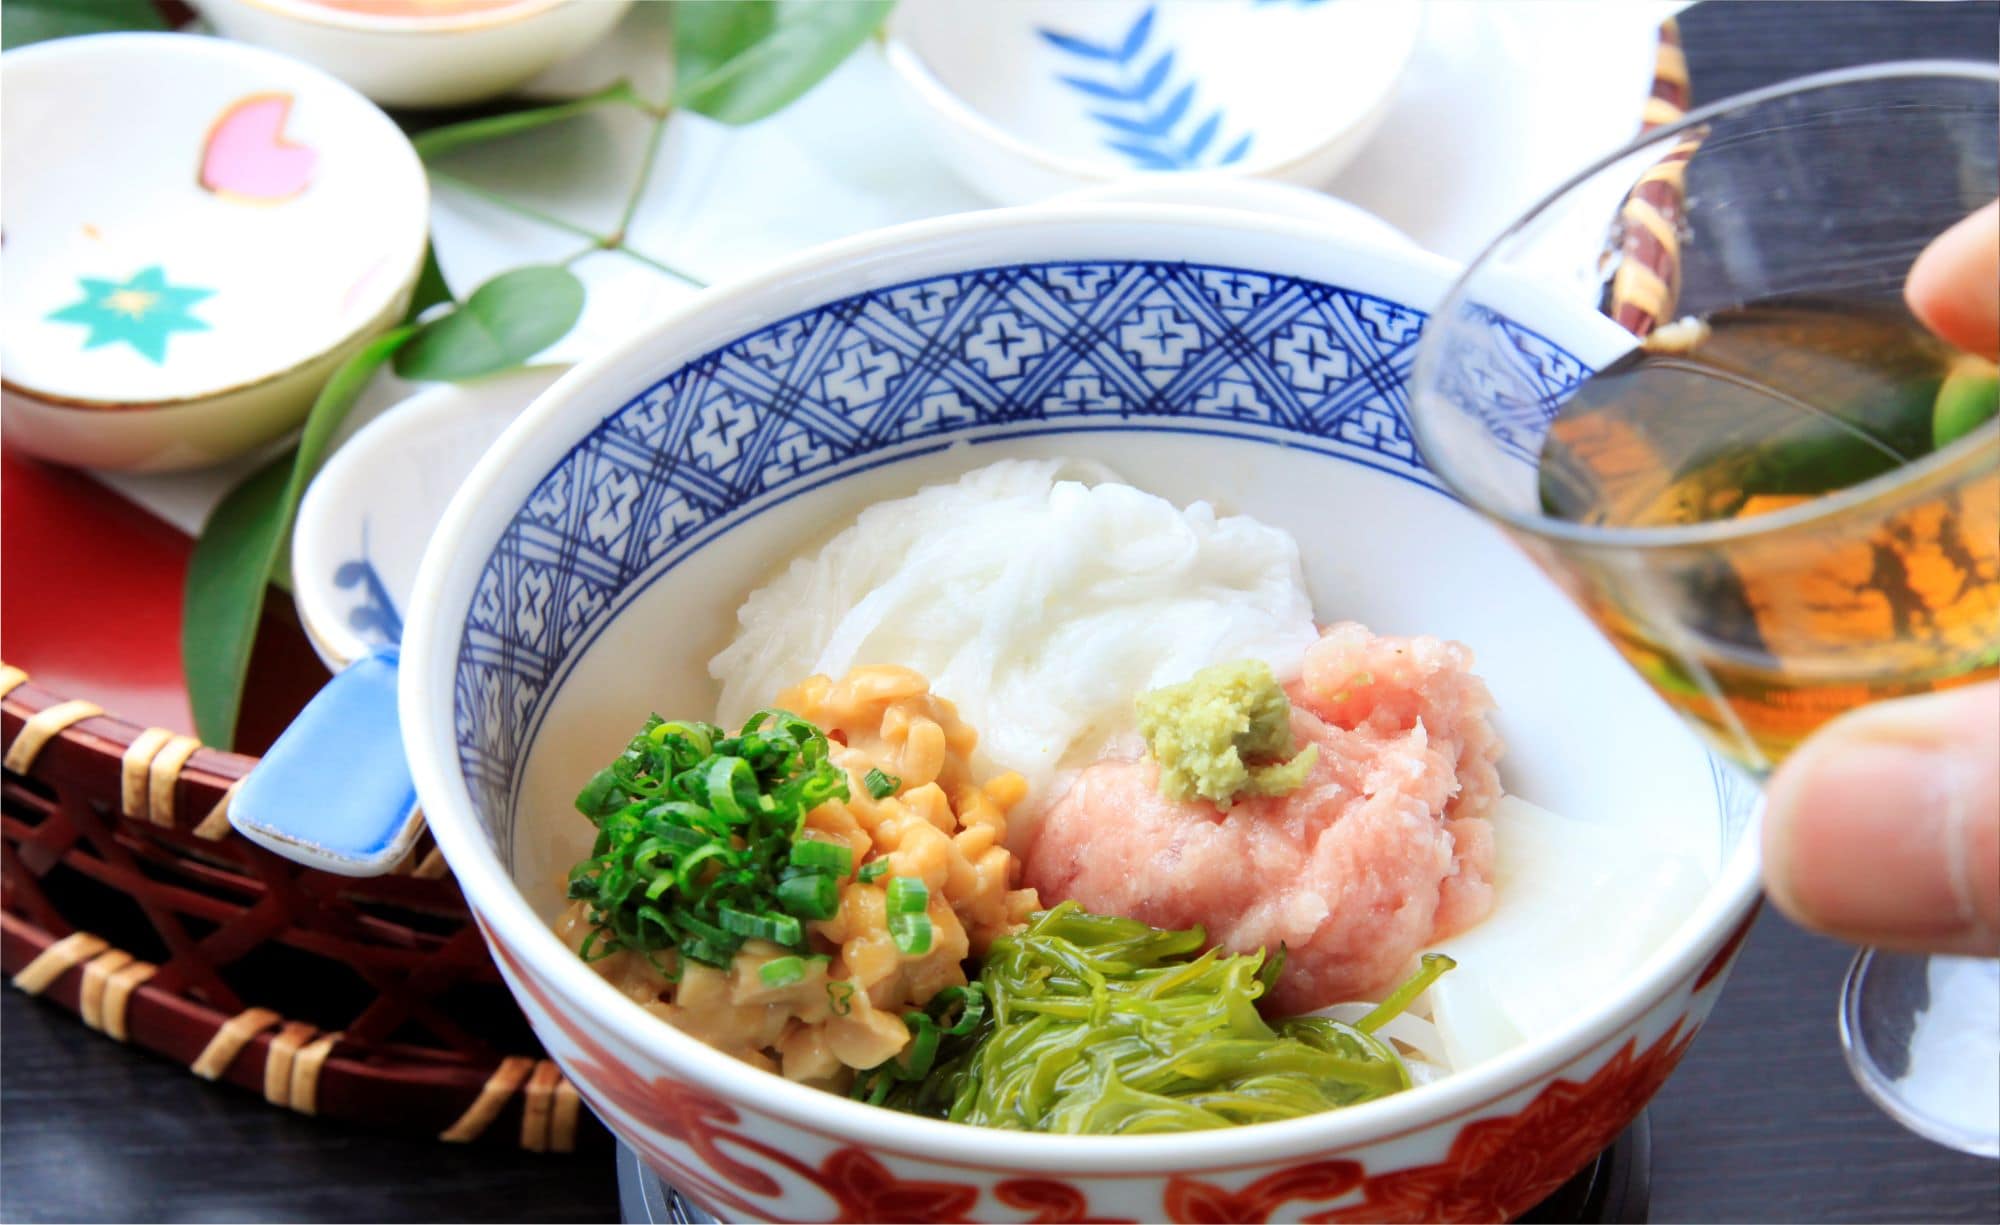 標準早餐是以“Yoro-wae”為中心的菜單，這是一種營養豐富的粘稠湯料和板町秘製湯料的合作。